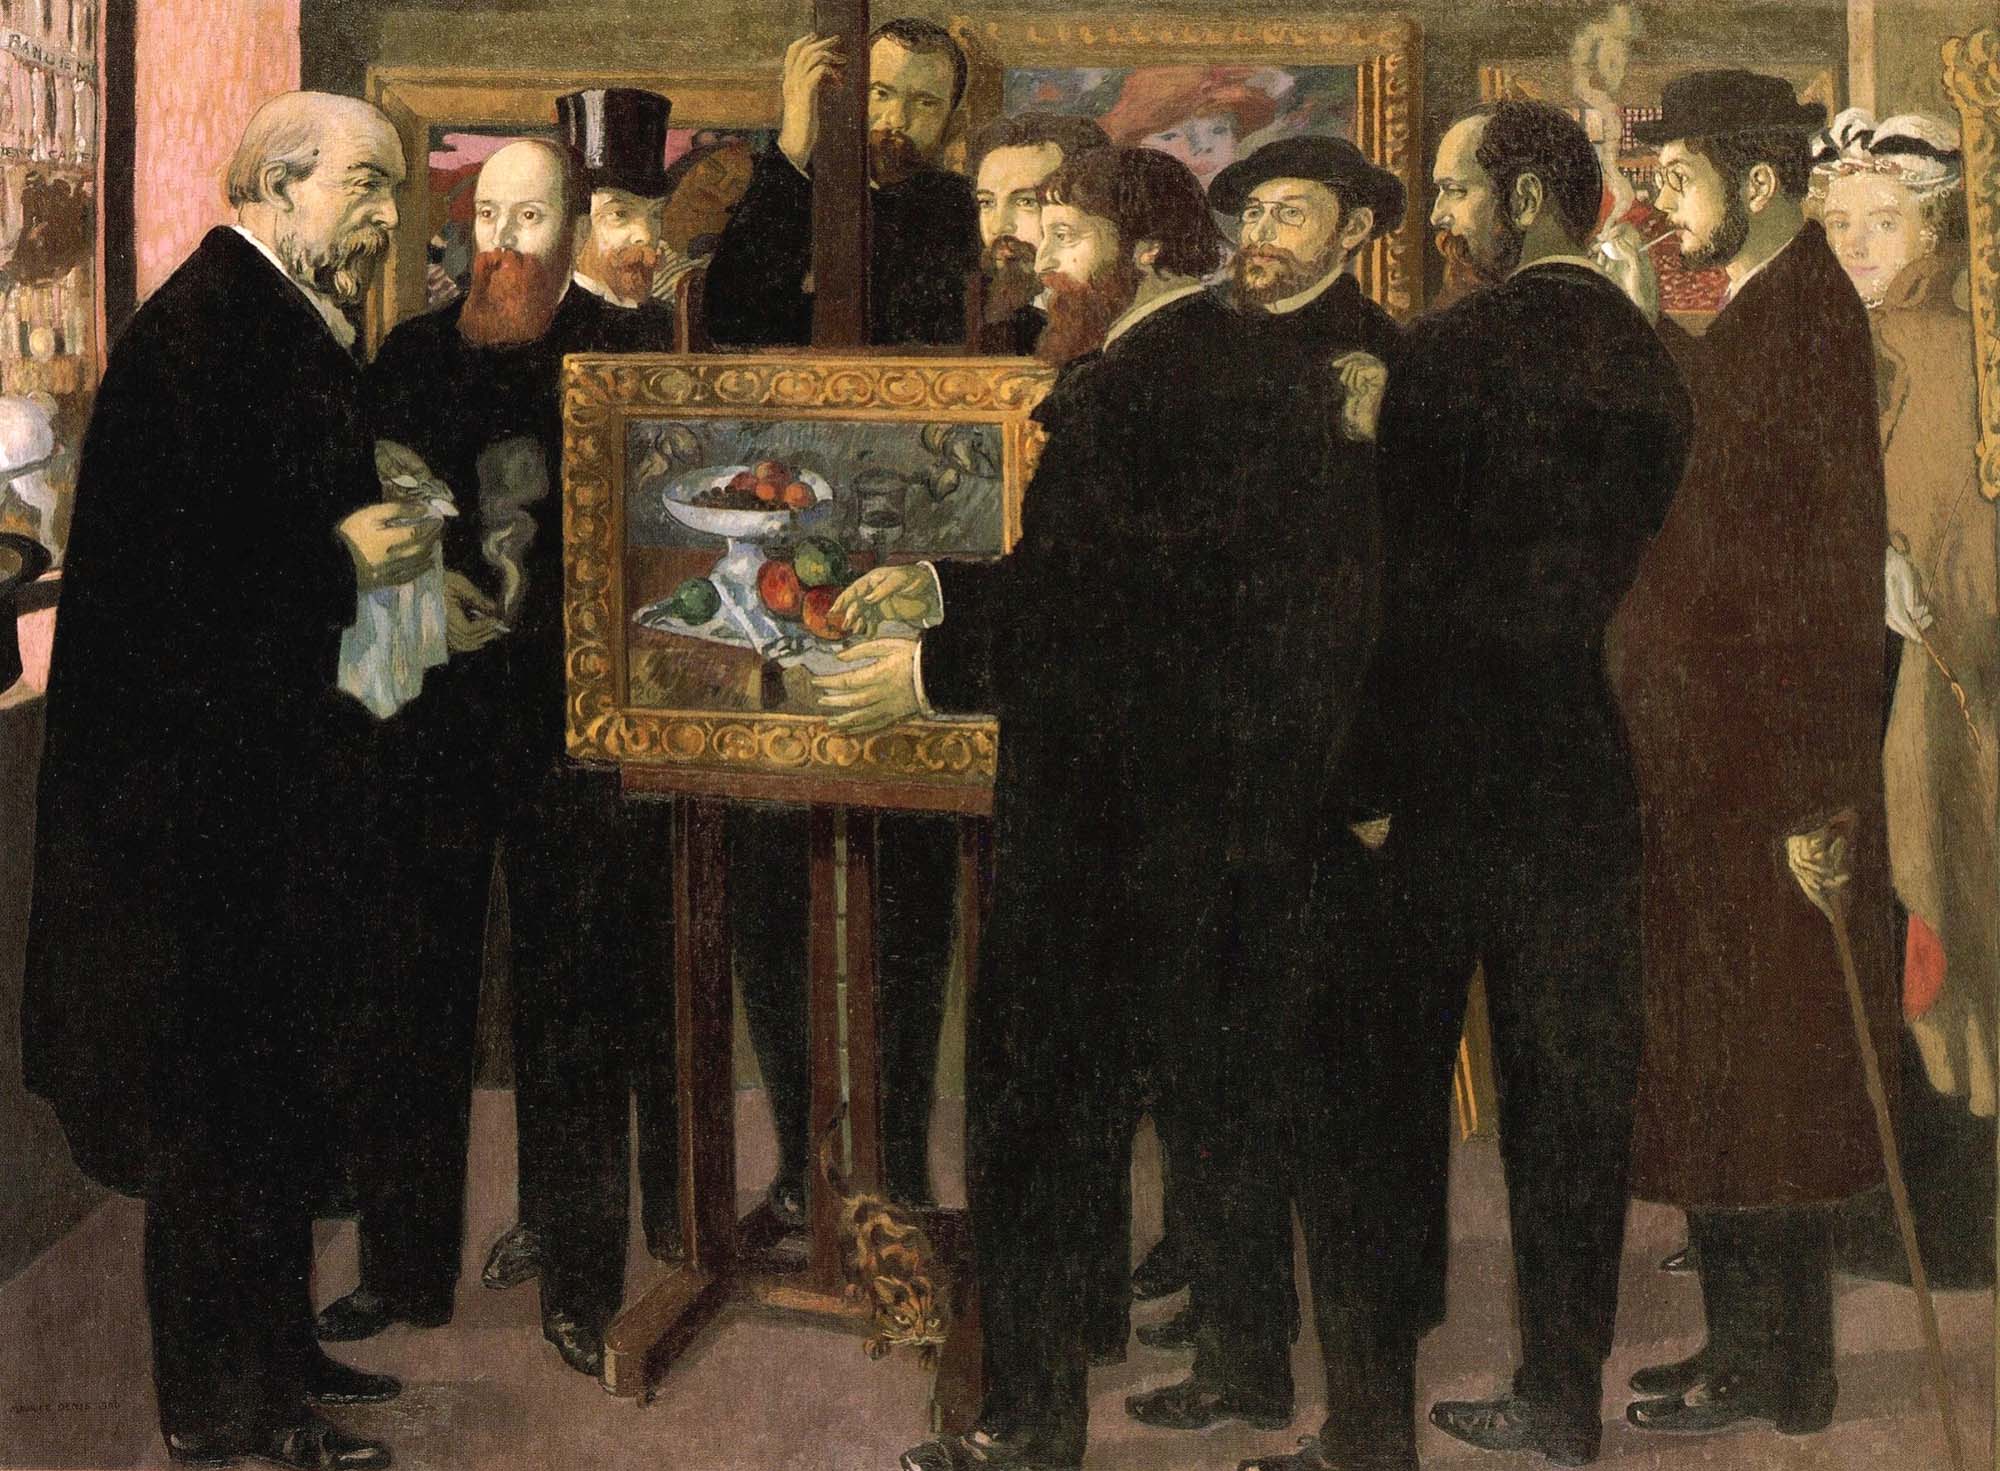 Maurice Denis, Homage to Cézanne, 1900, oil on canvas, Musée d'Orsay, Paris